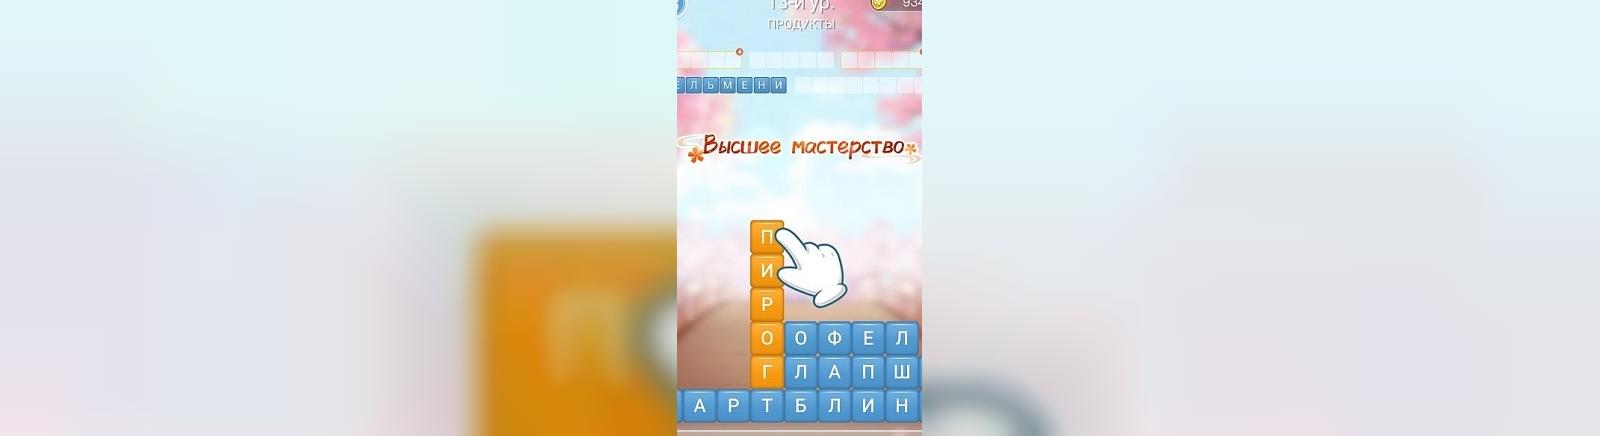 Дата выхода Разбить слова - игра в слова (Разбить Слова: Устранение Блоков Слов)  на iOS и Android в России и во всем мире